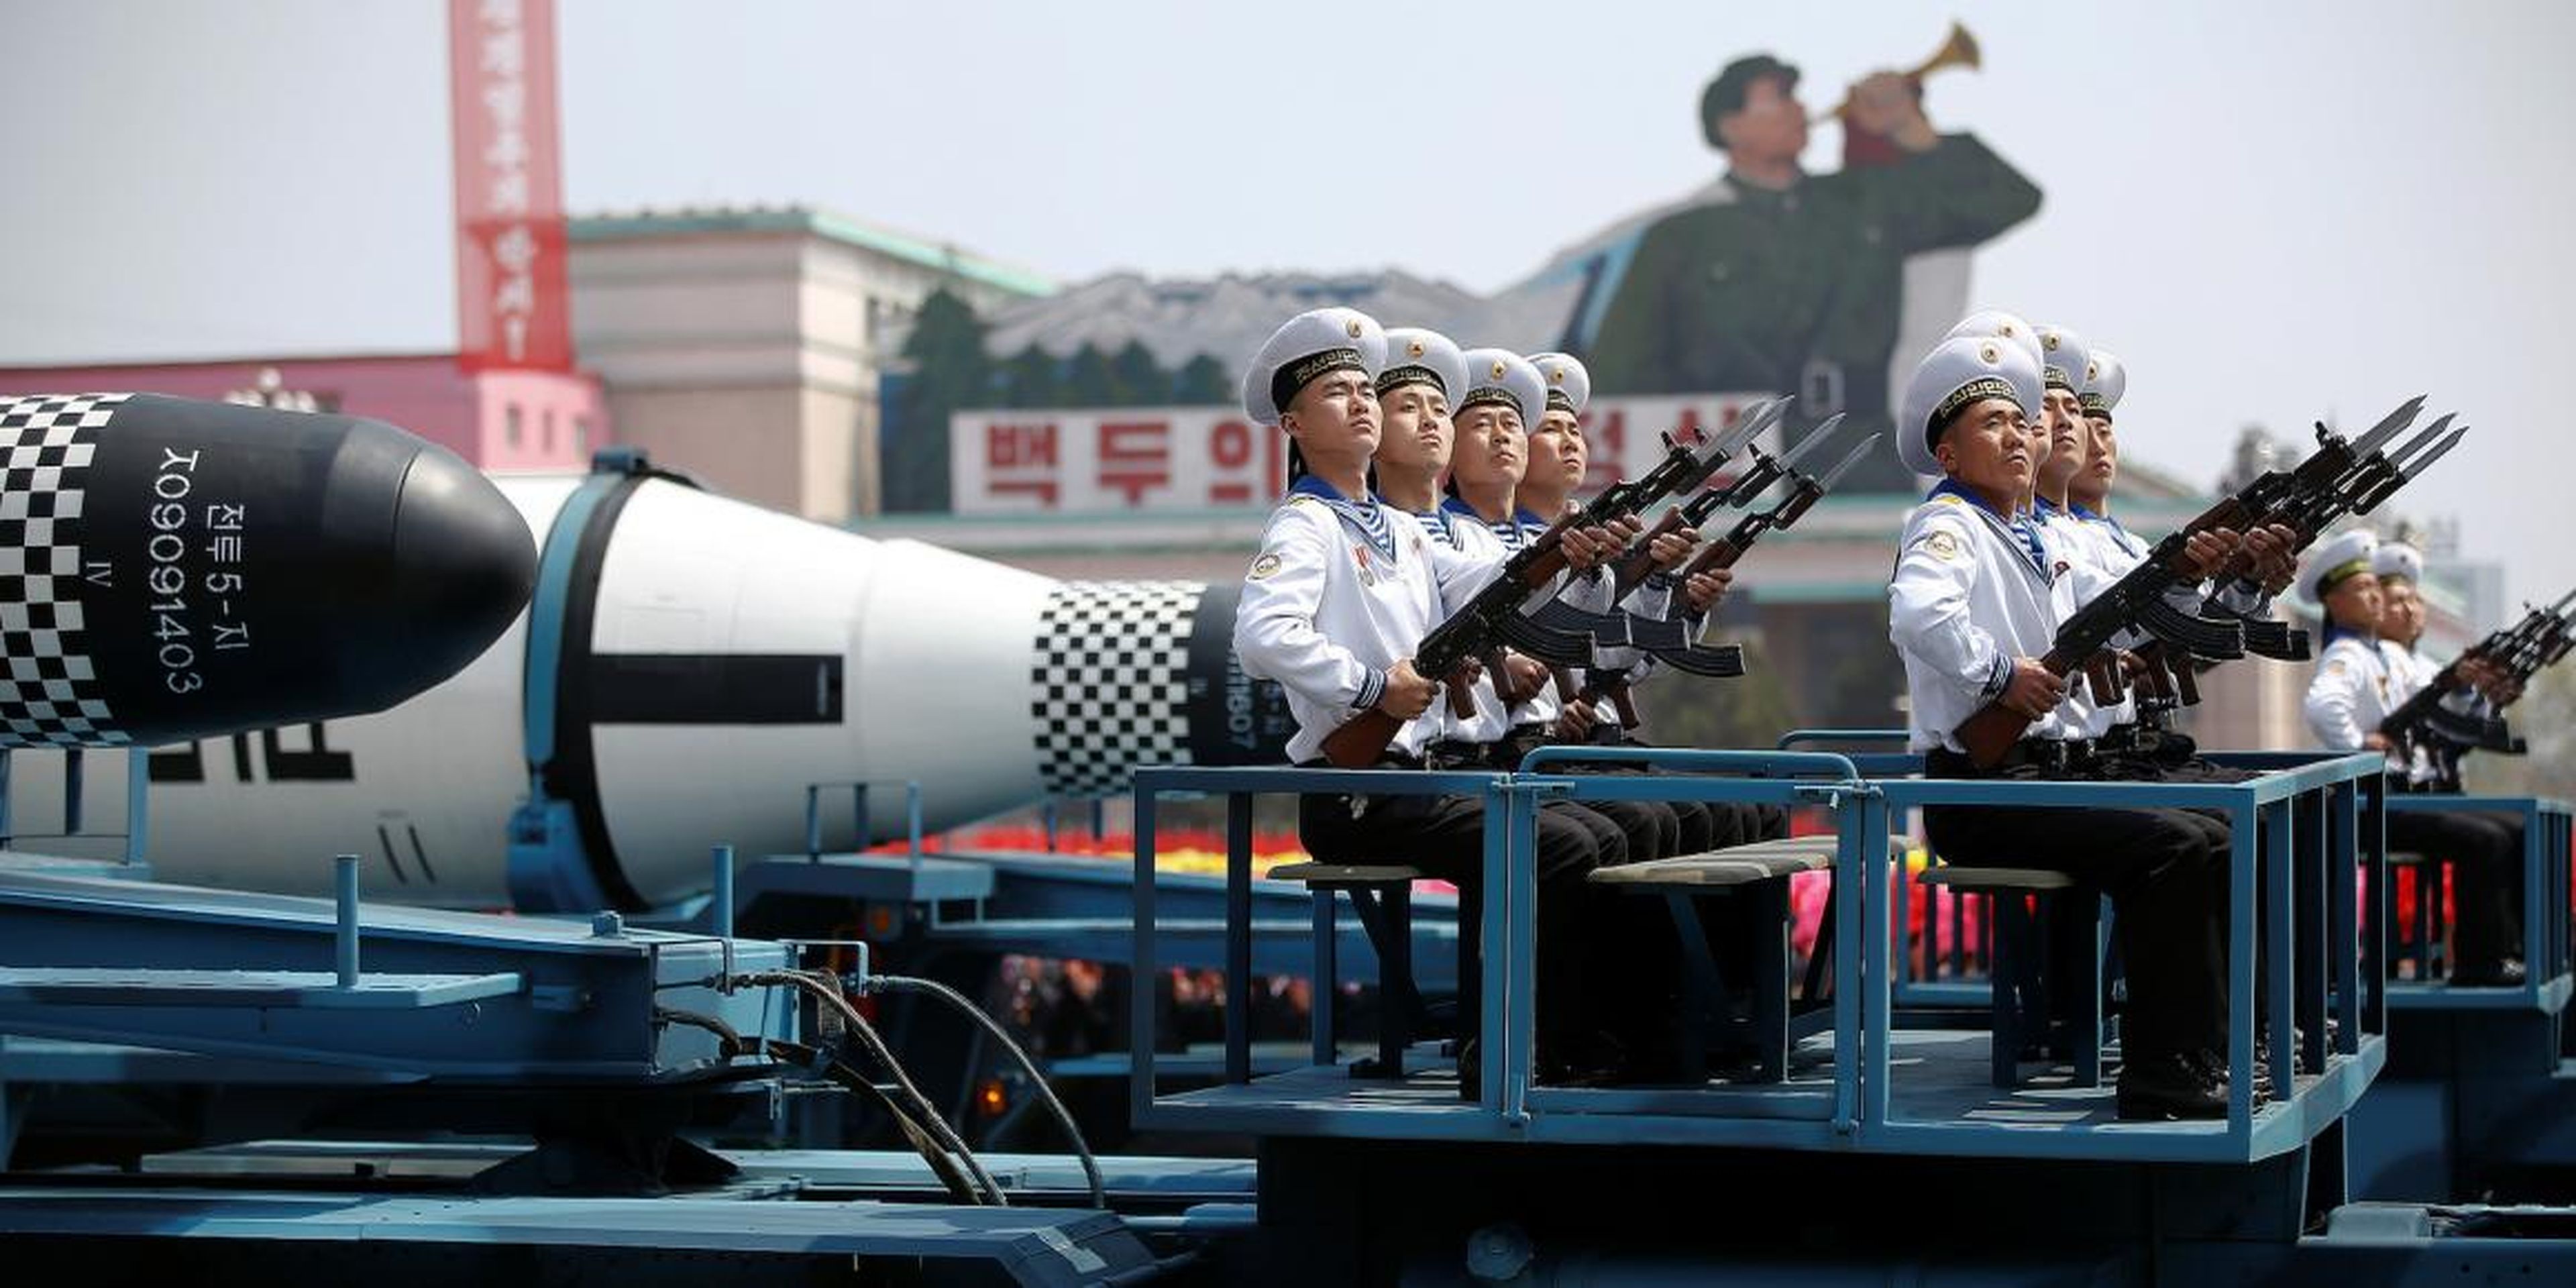 Vehículos militares transportan misiles durante un desfile militar en Corea del Norte.